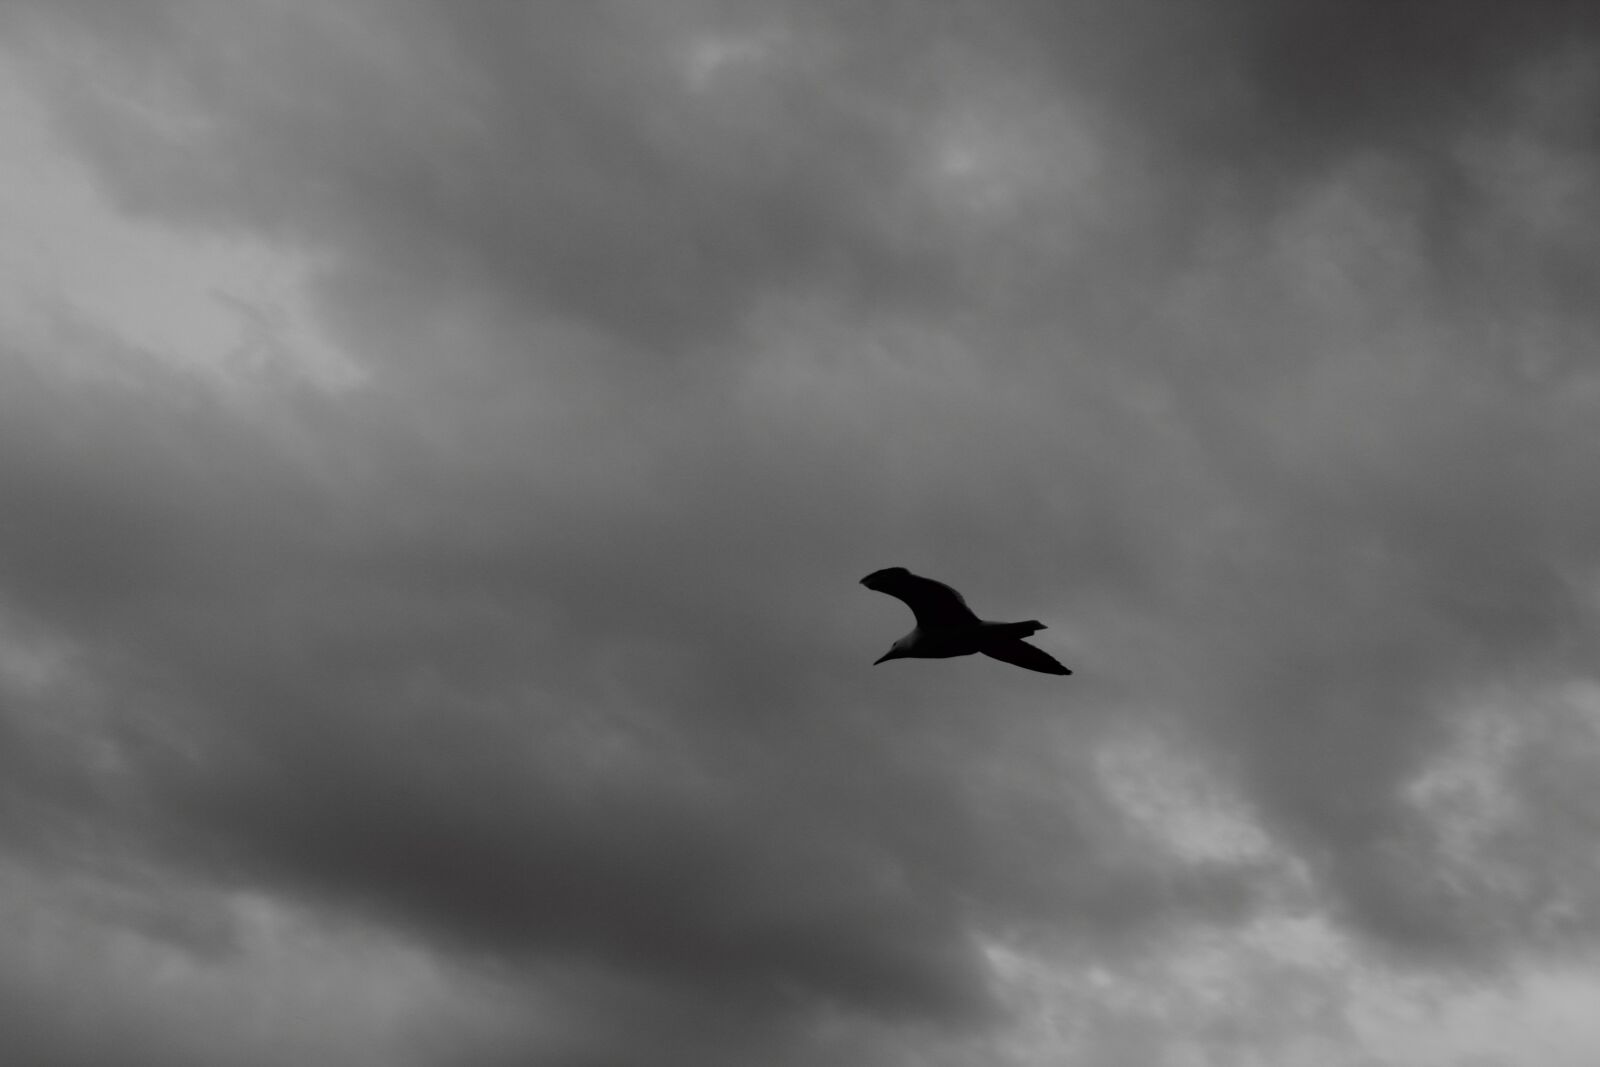 Canon EOS 60D sample photo. Bird, sky, blackandwhite photography